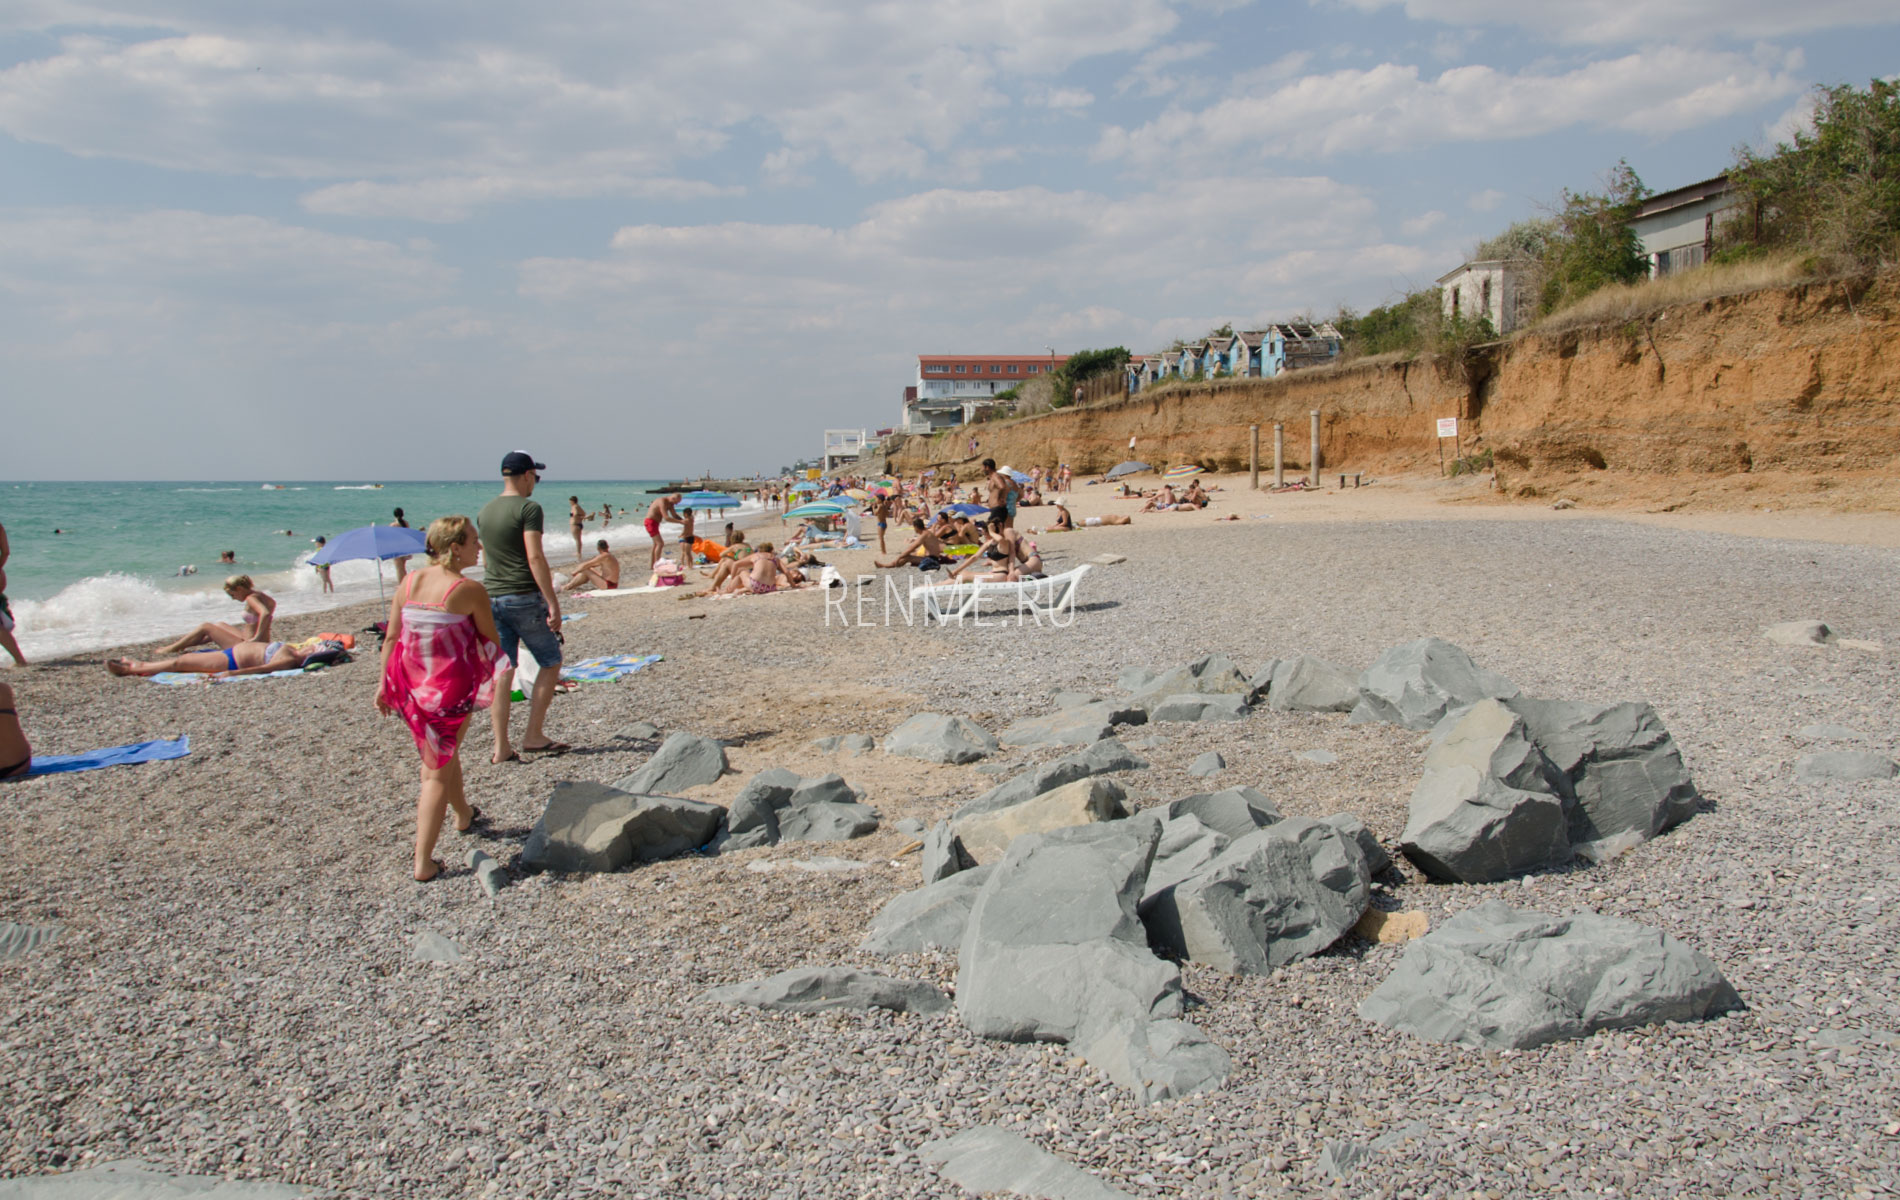 Пляж "Ветеран" летом 2019. Фото Николаевки